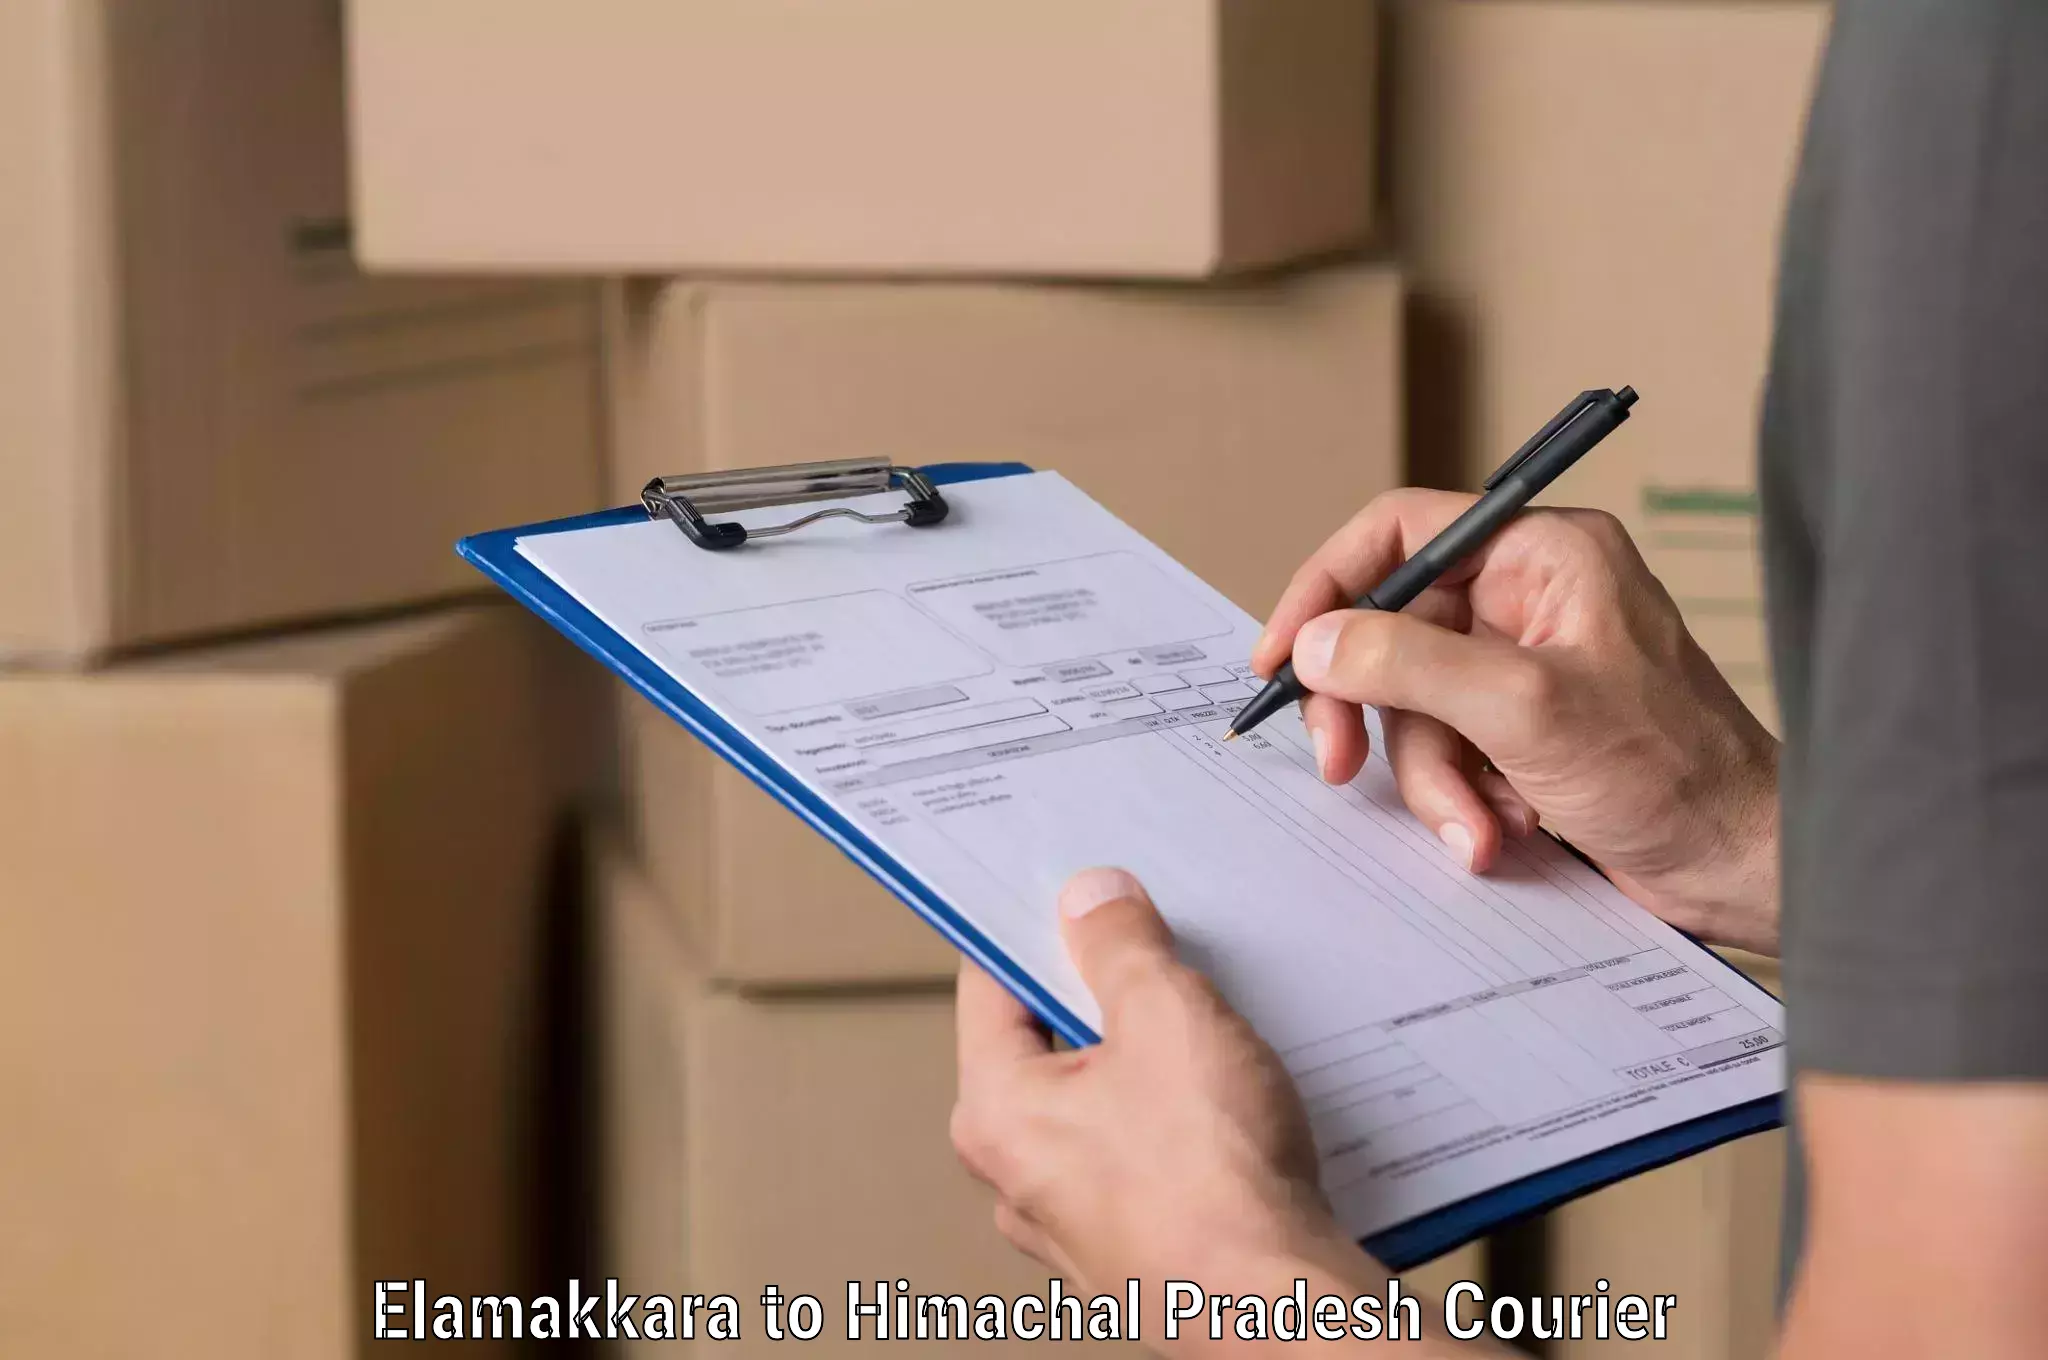 Optimized shipping routes Elamakkara to Dharamshala